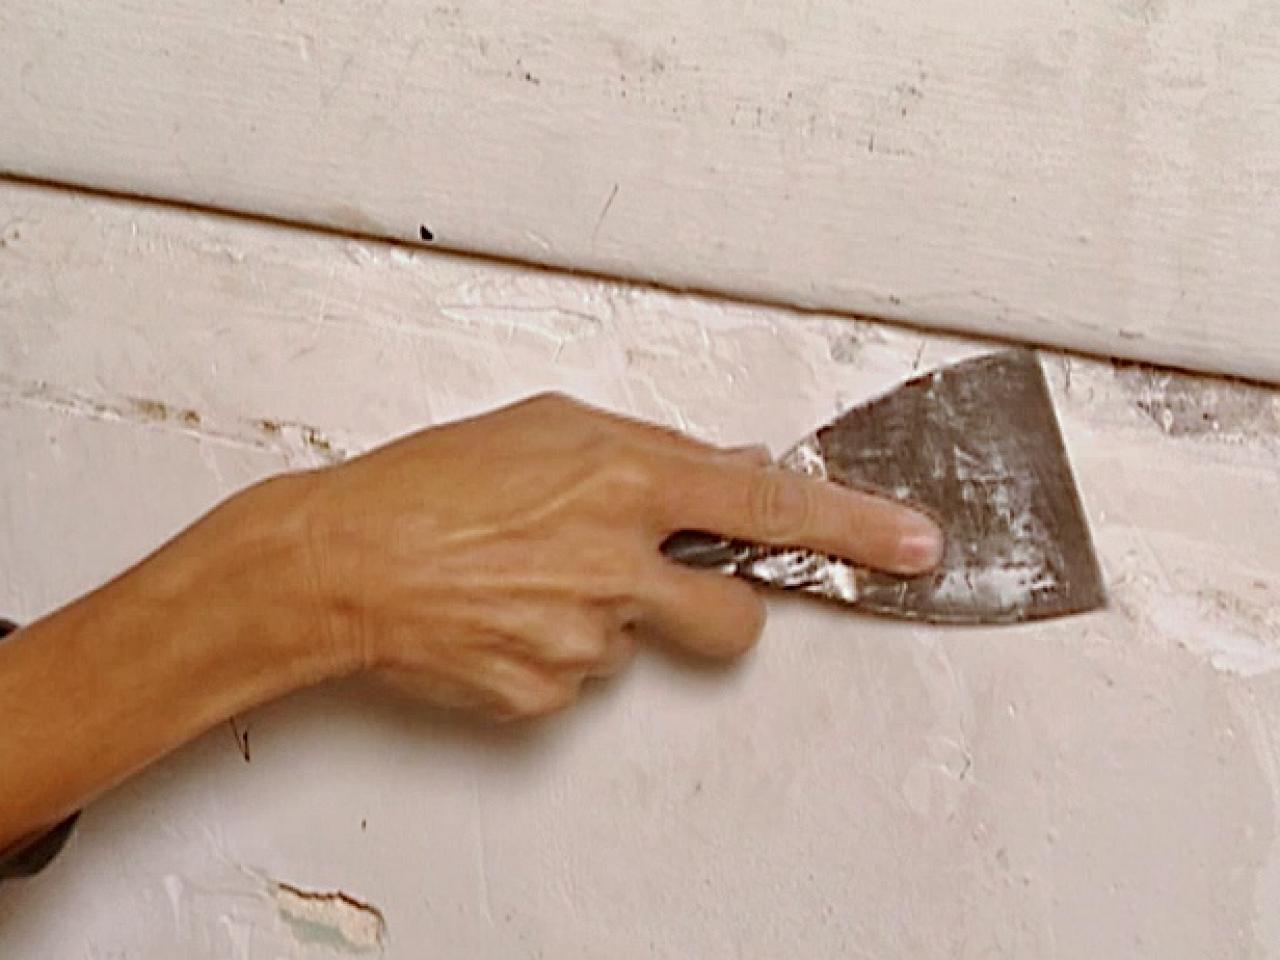 wall plaster scraper